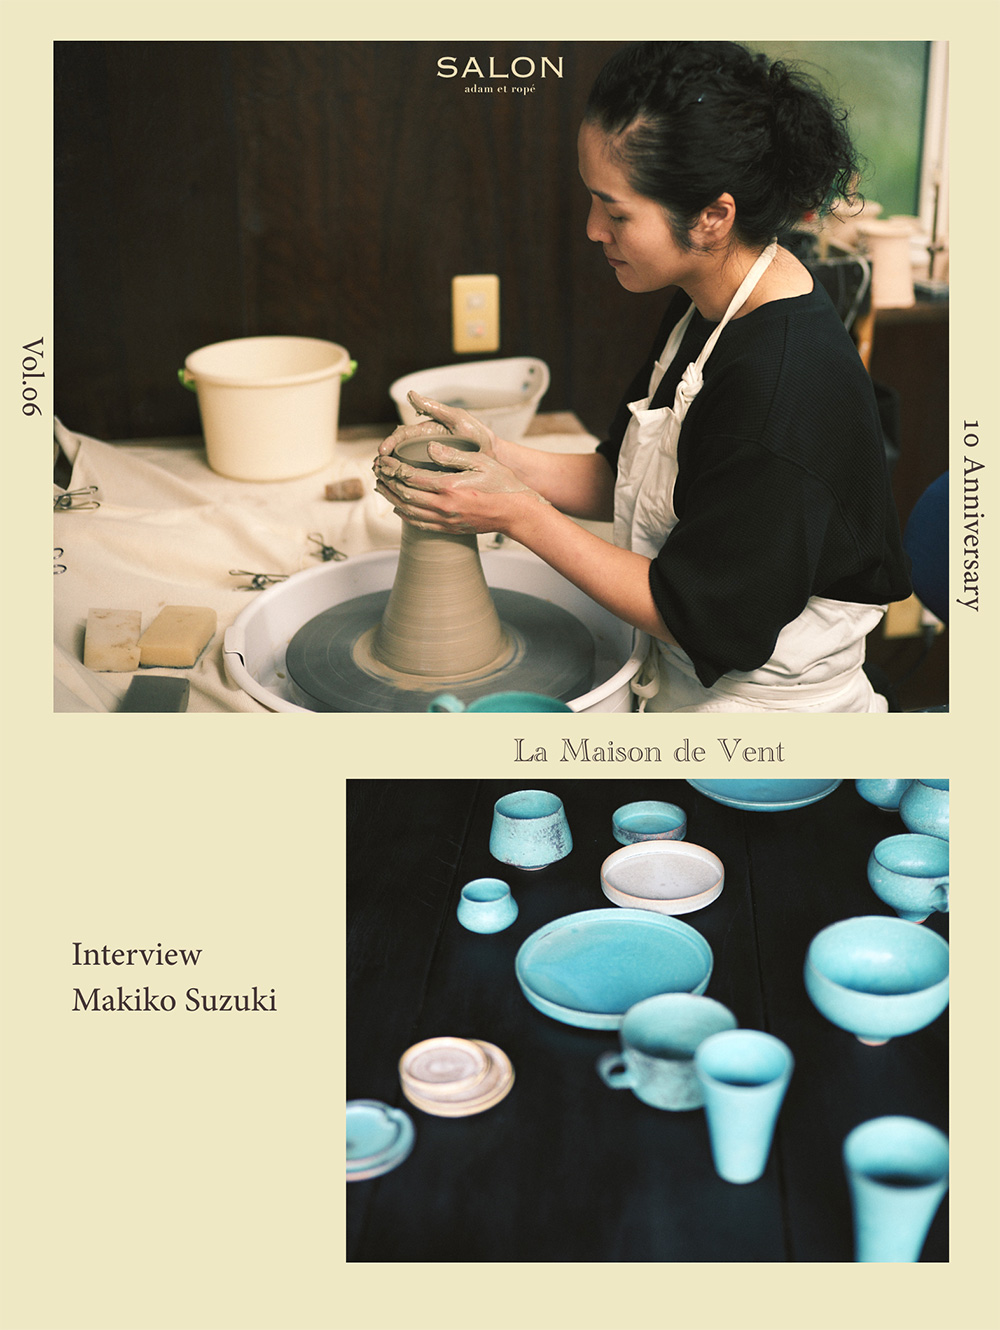 Interview with Maikiko Suzuki - La Maison de Vent 10th Anniversary -